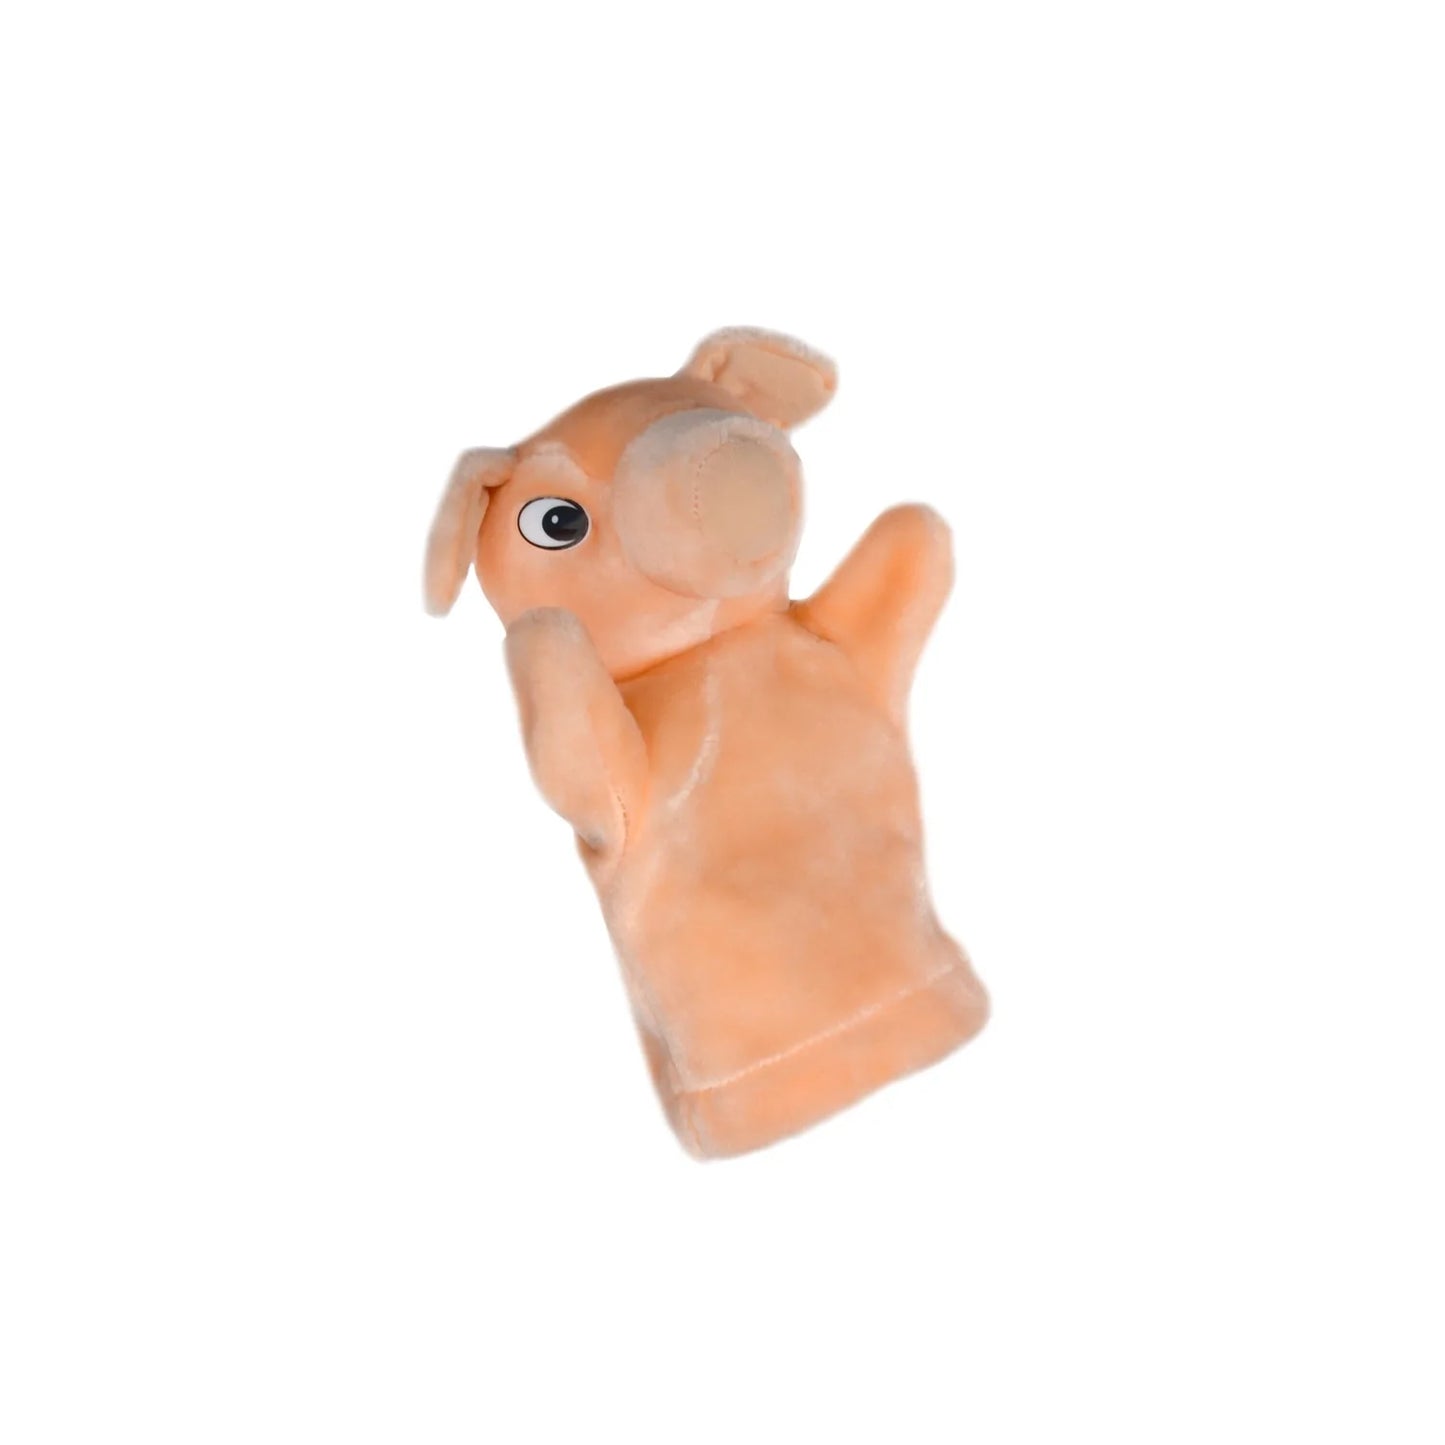 Pig Hand Glove Puppet